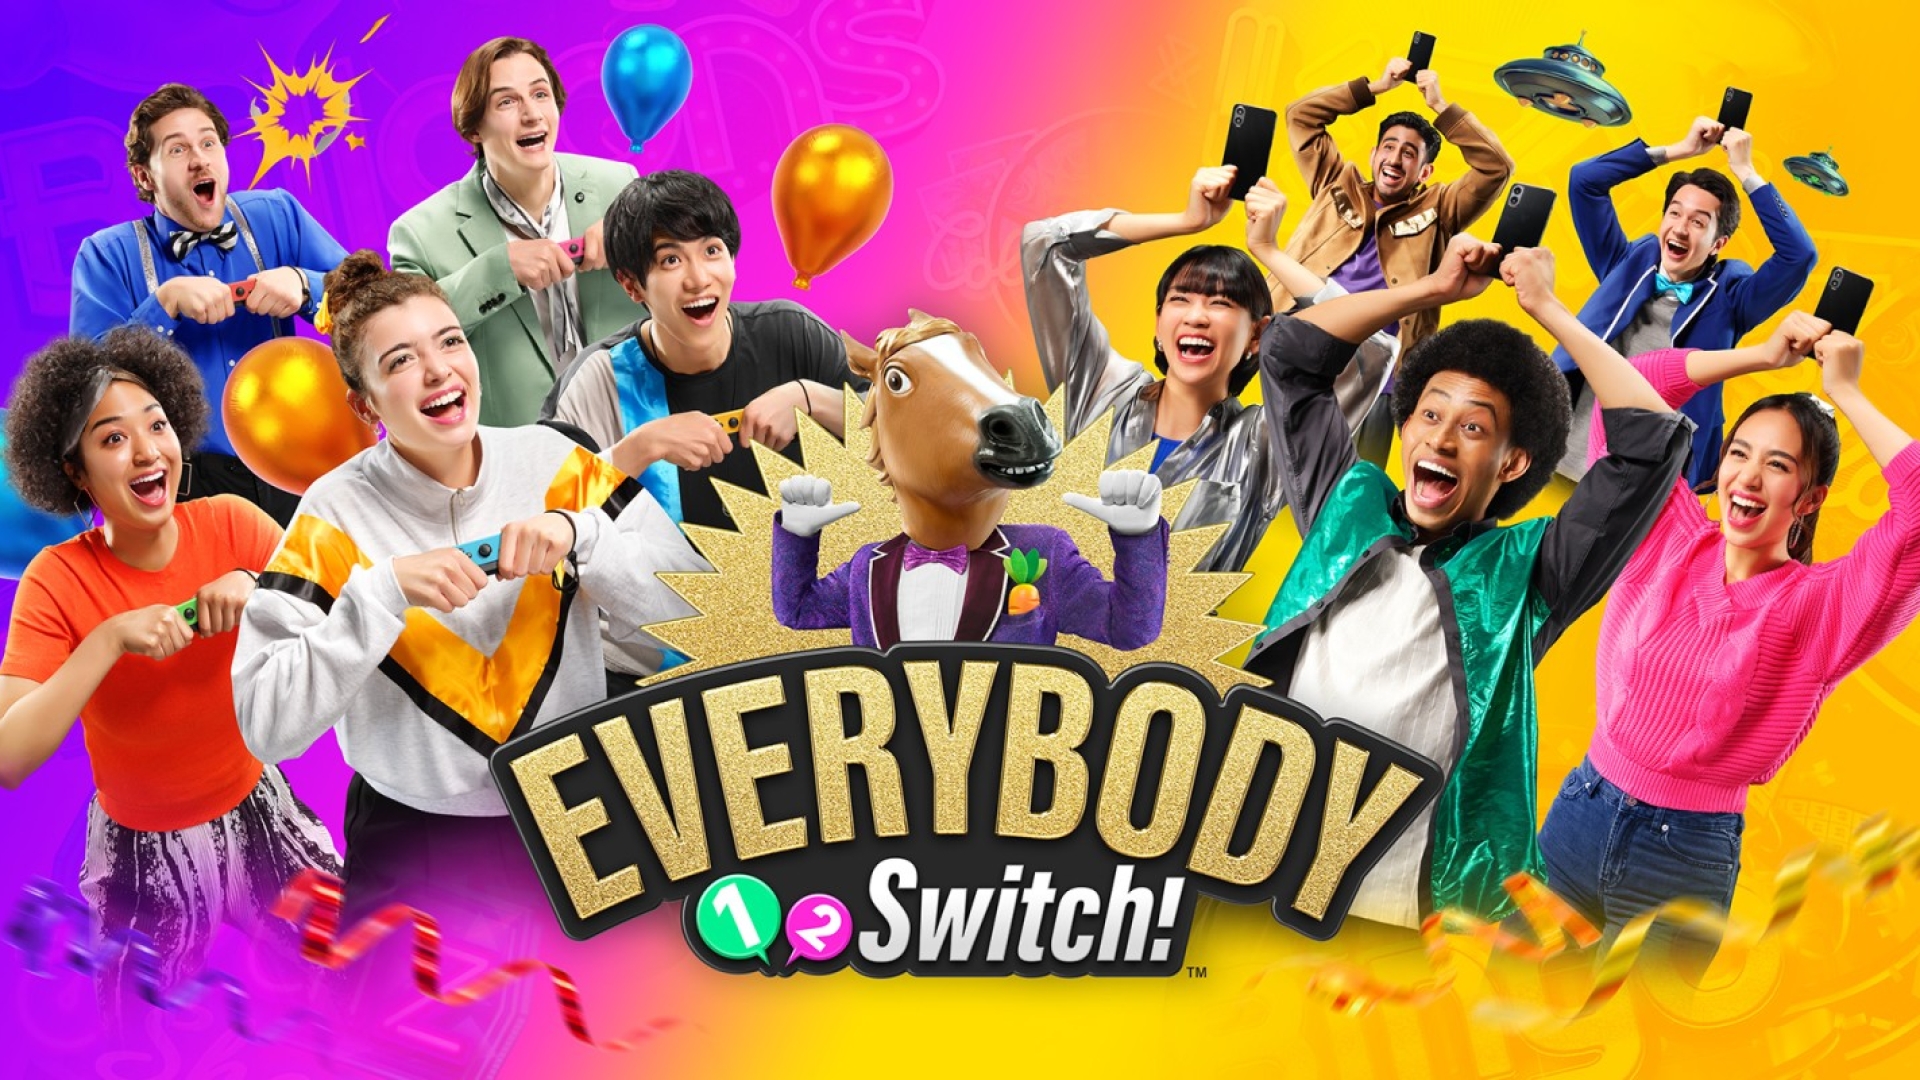 Everybody 1-2-Switch! - Nuovi dettagli